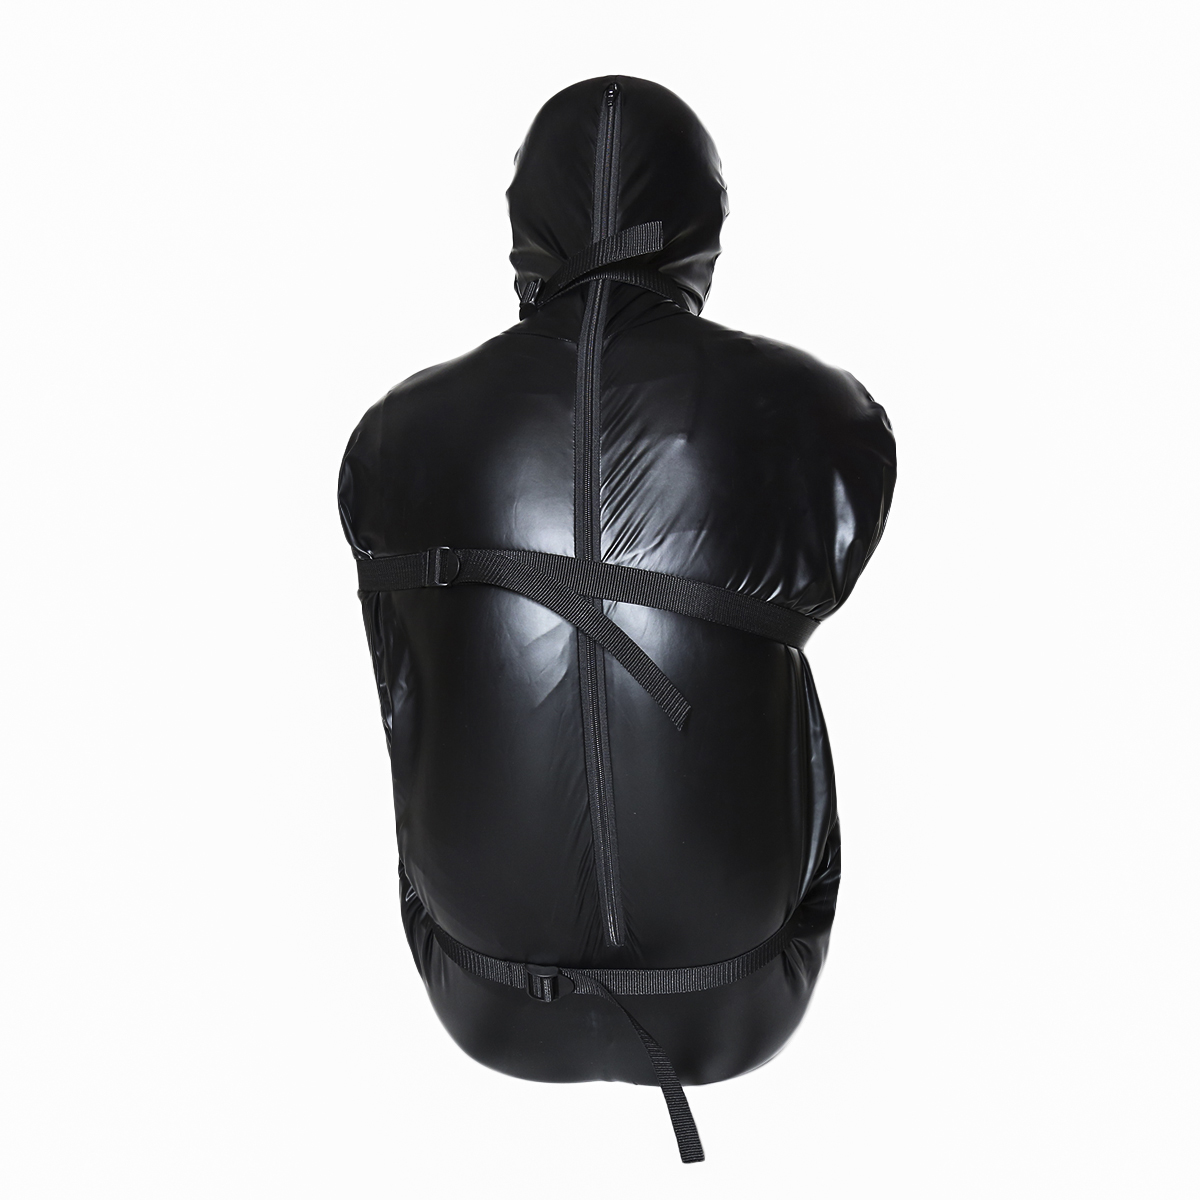 Body-Bag-Full-Cover-Straitjacket-M-OPR-321110-1